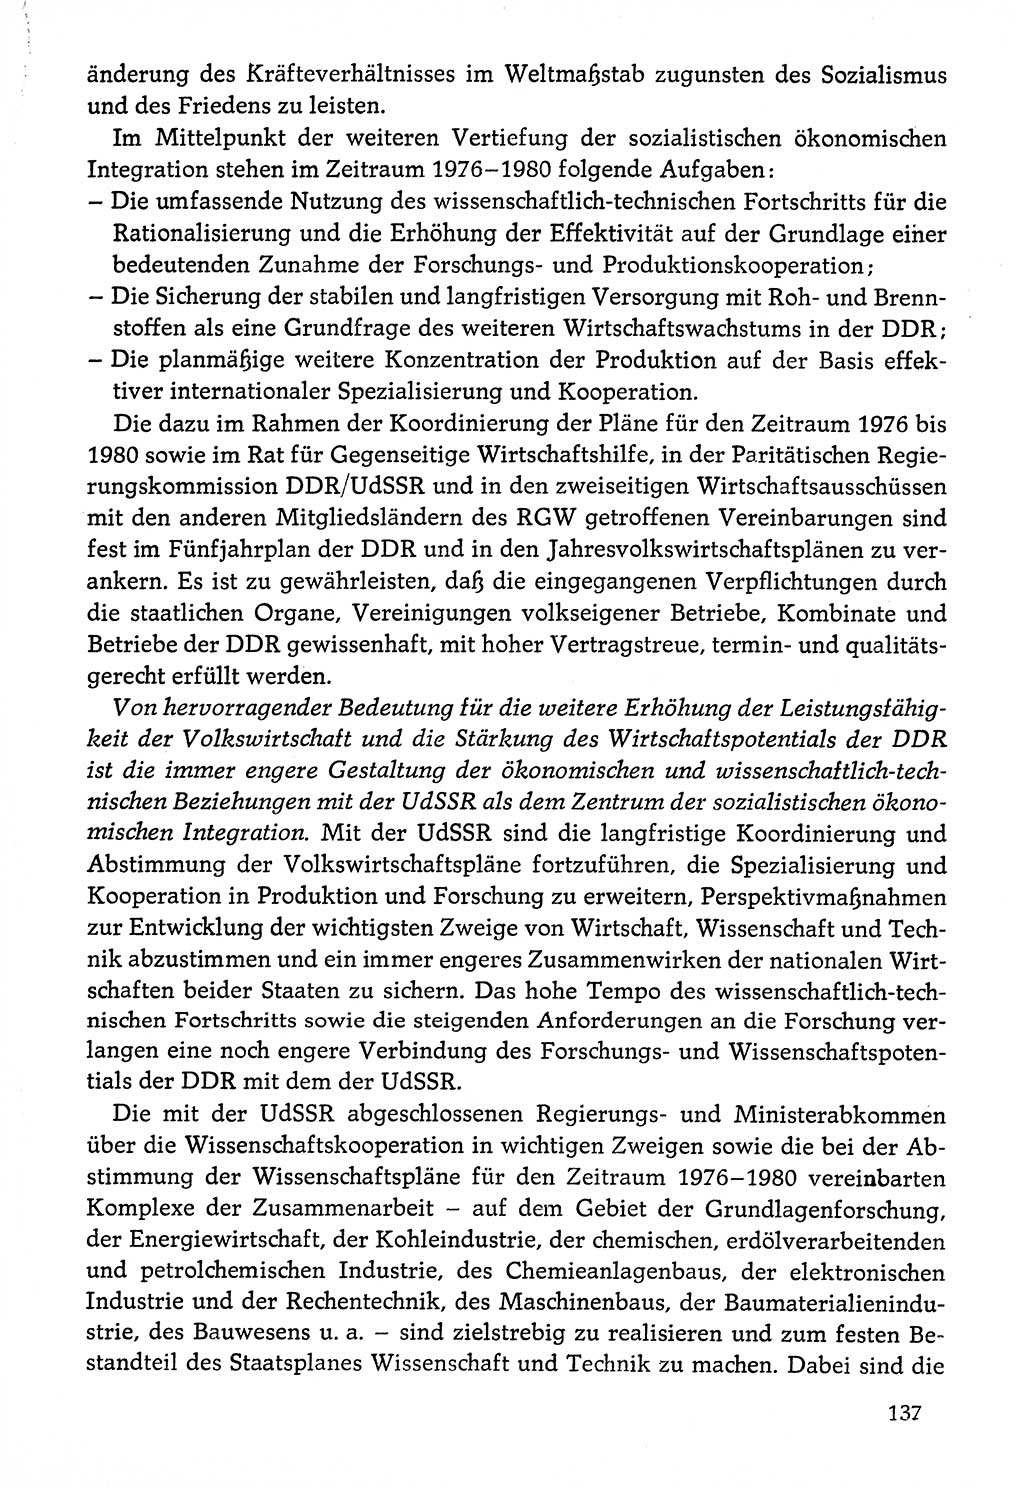 Dokumente der Sozialistischen Einheitspartei Deutschlands (SED) [Deutsche Demokratische Republik (DDR)] 1976-1977, Seite 137 (Dok. SED DDR 1976-1977, S. 137)